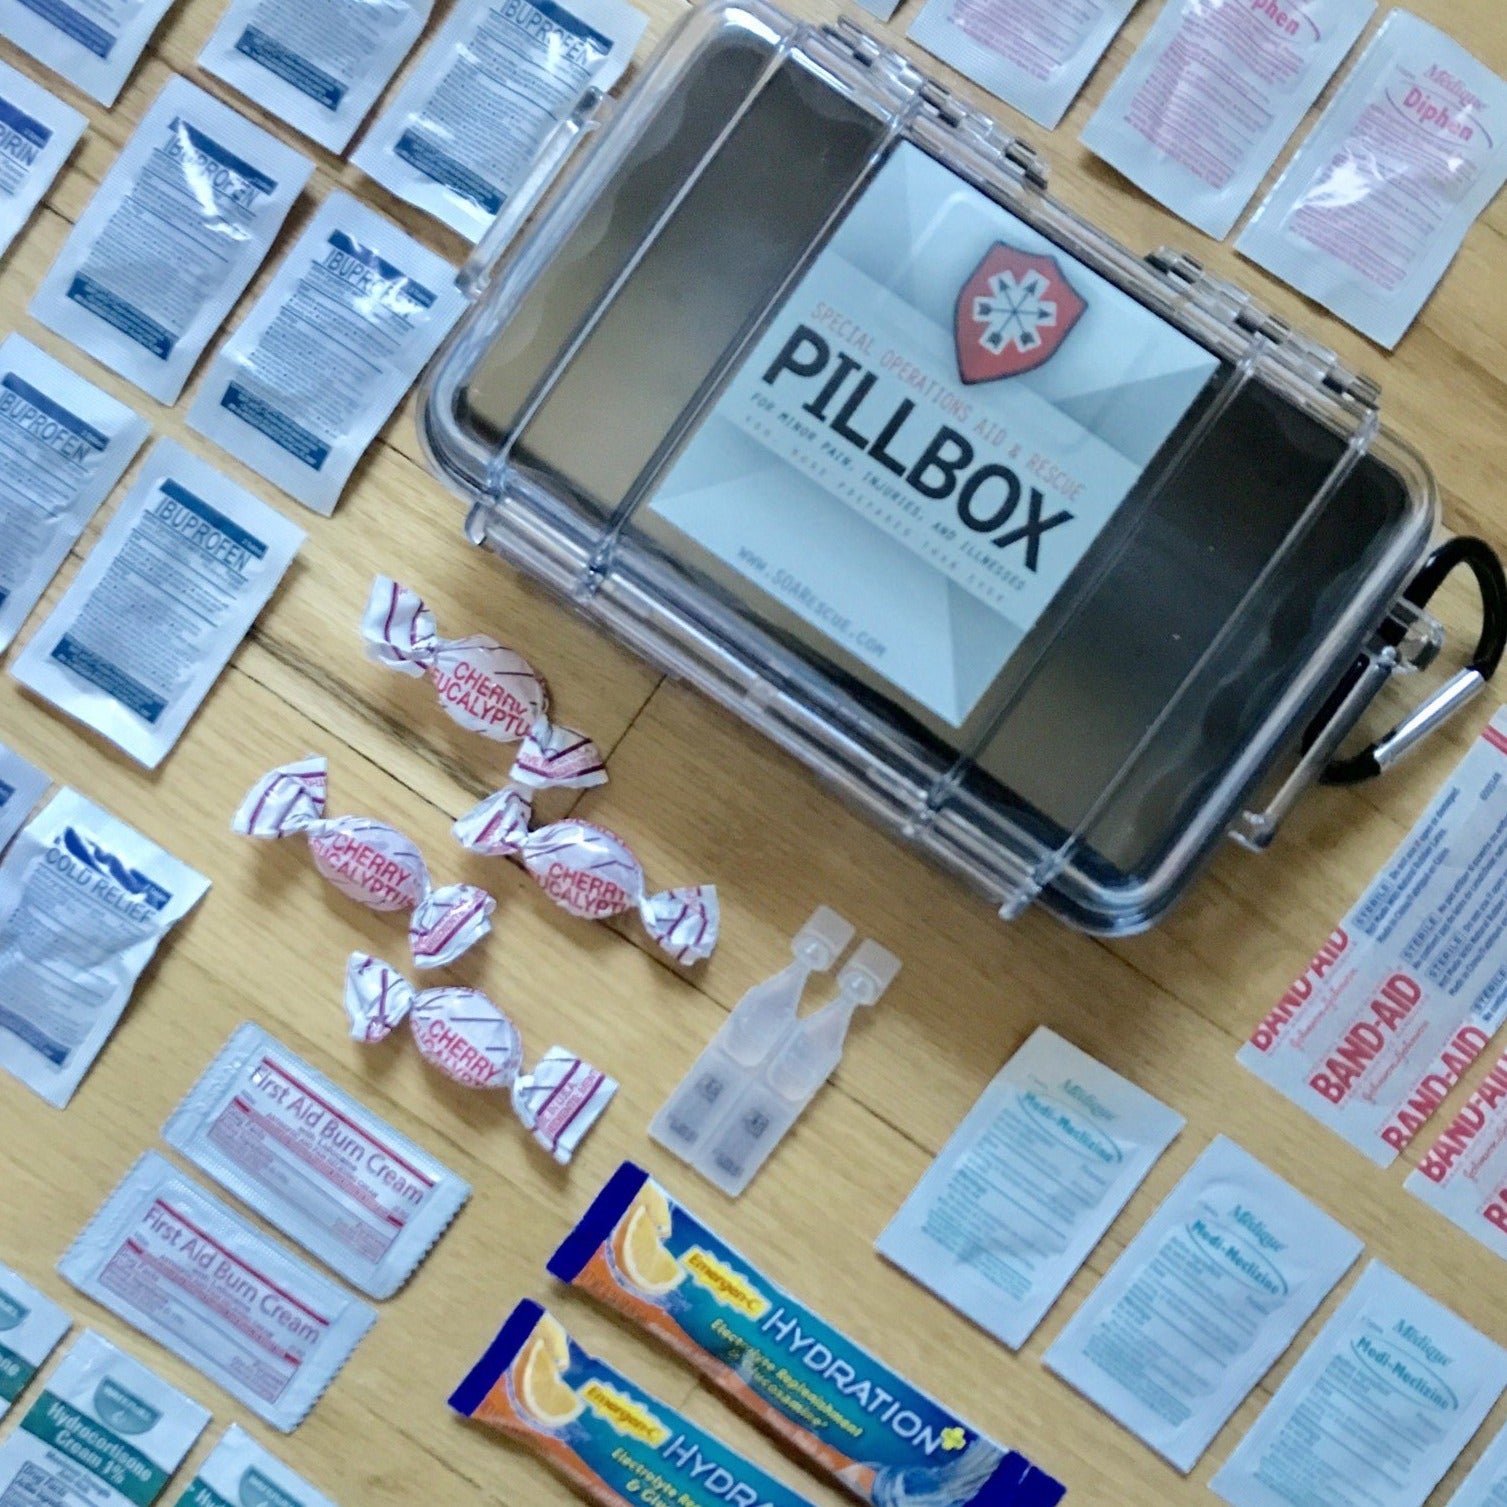 Pillbox Refill Kit